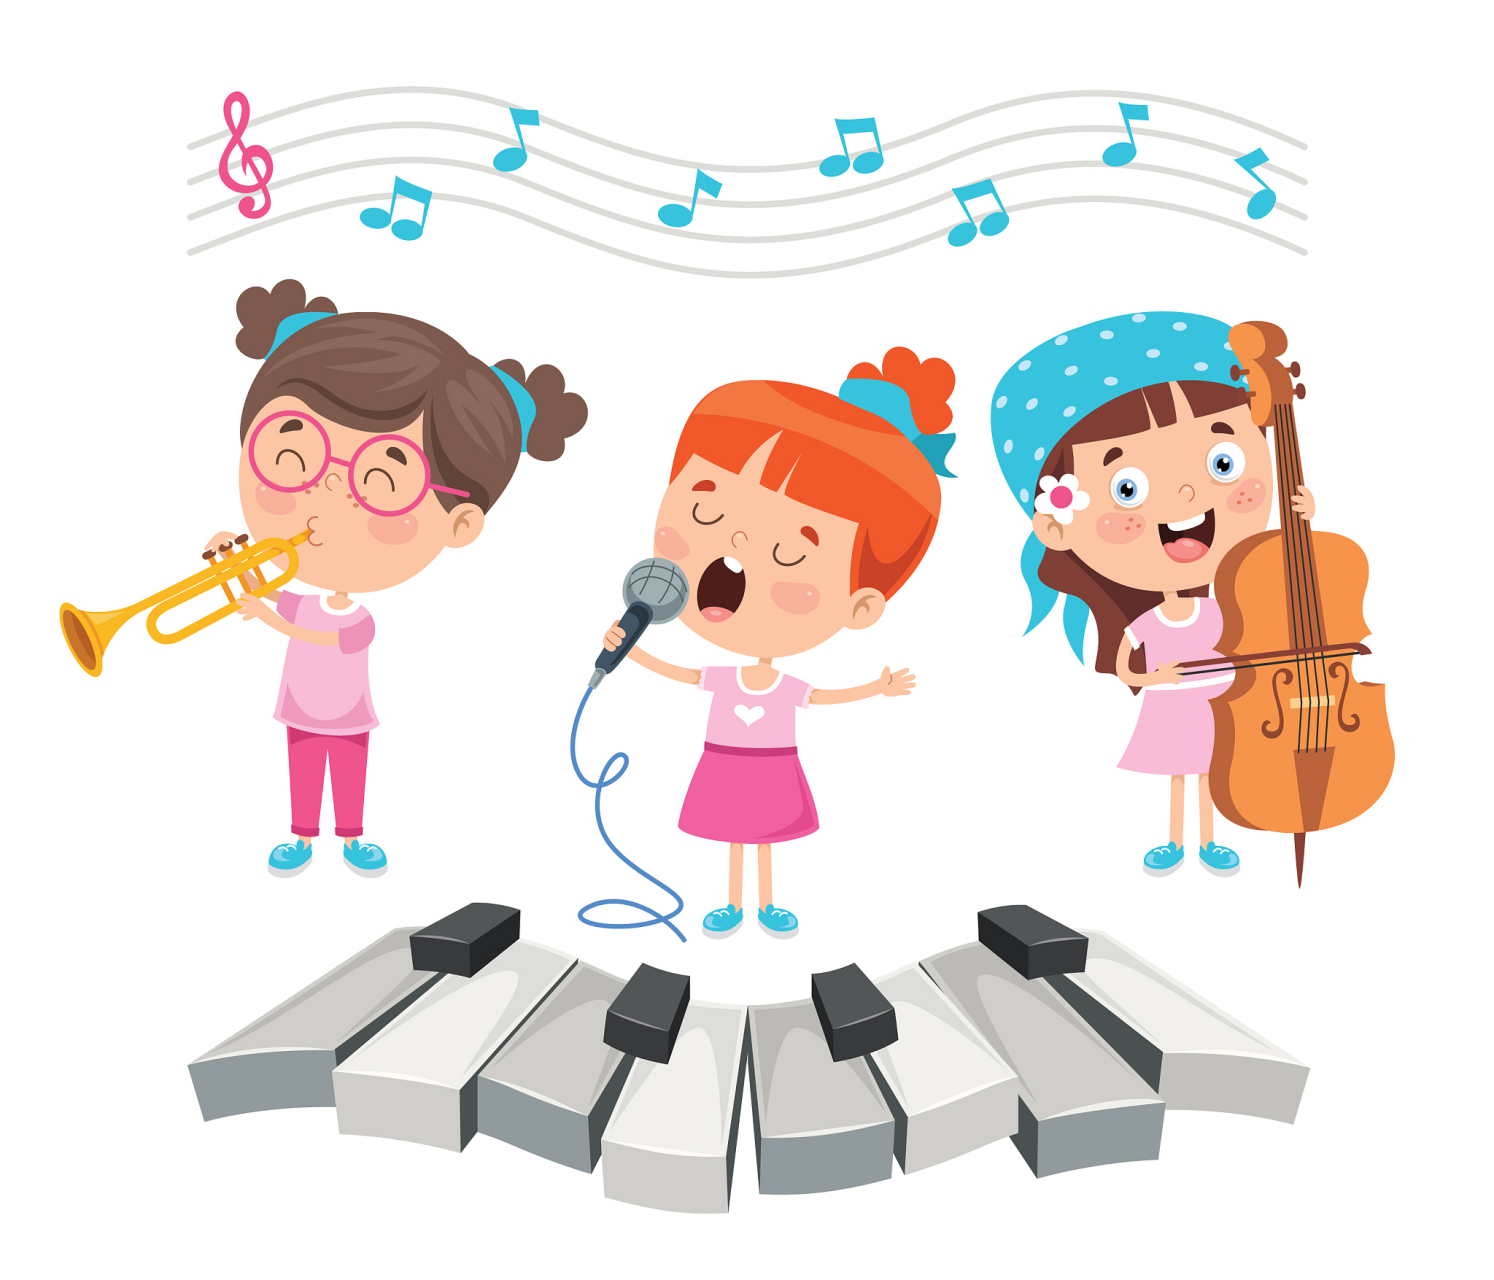 儿童音乐教育的优势 儿童音乐教育具有诸多优势,以下是其中一些主要